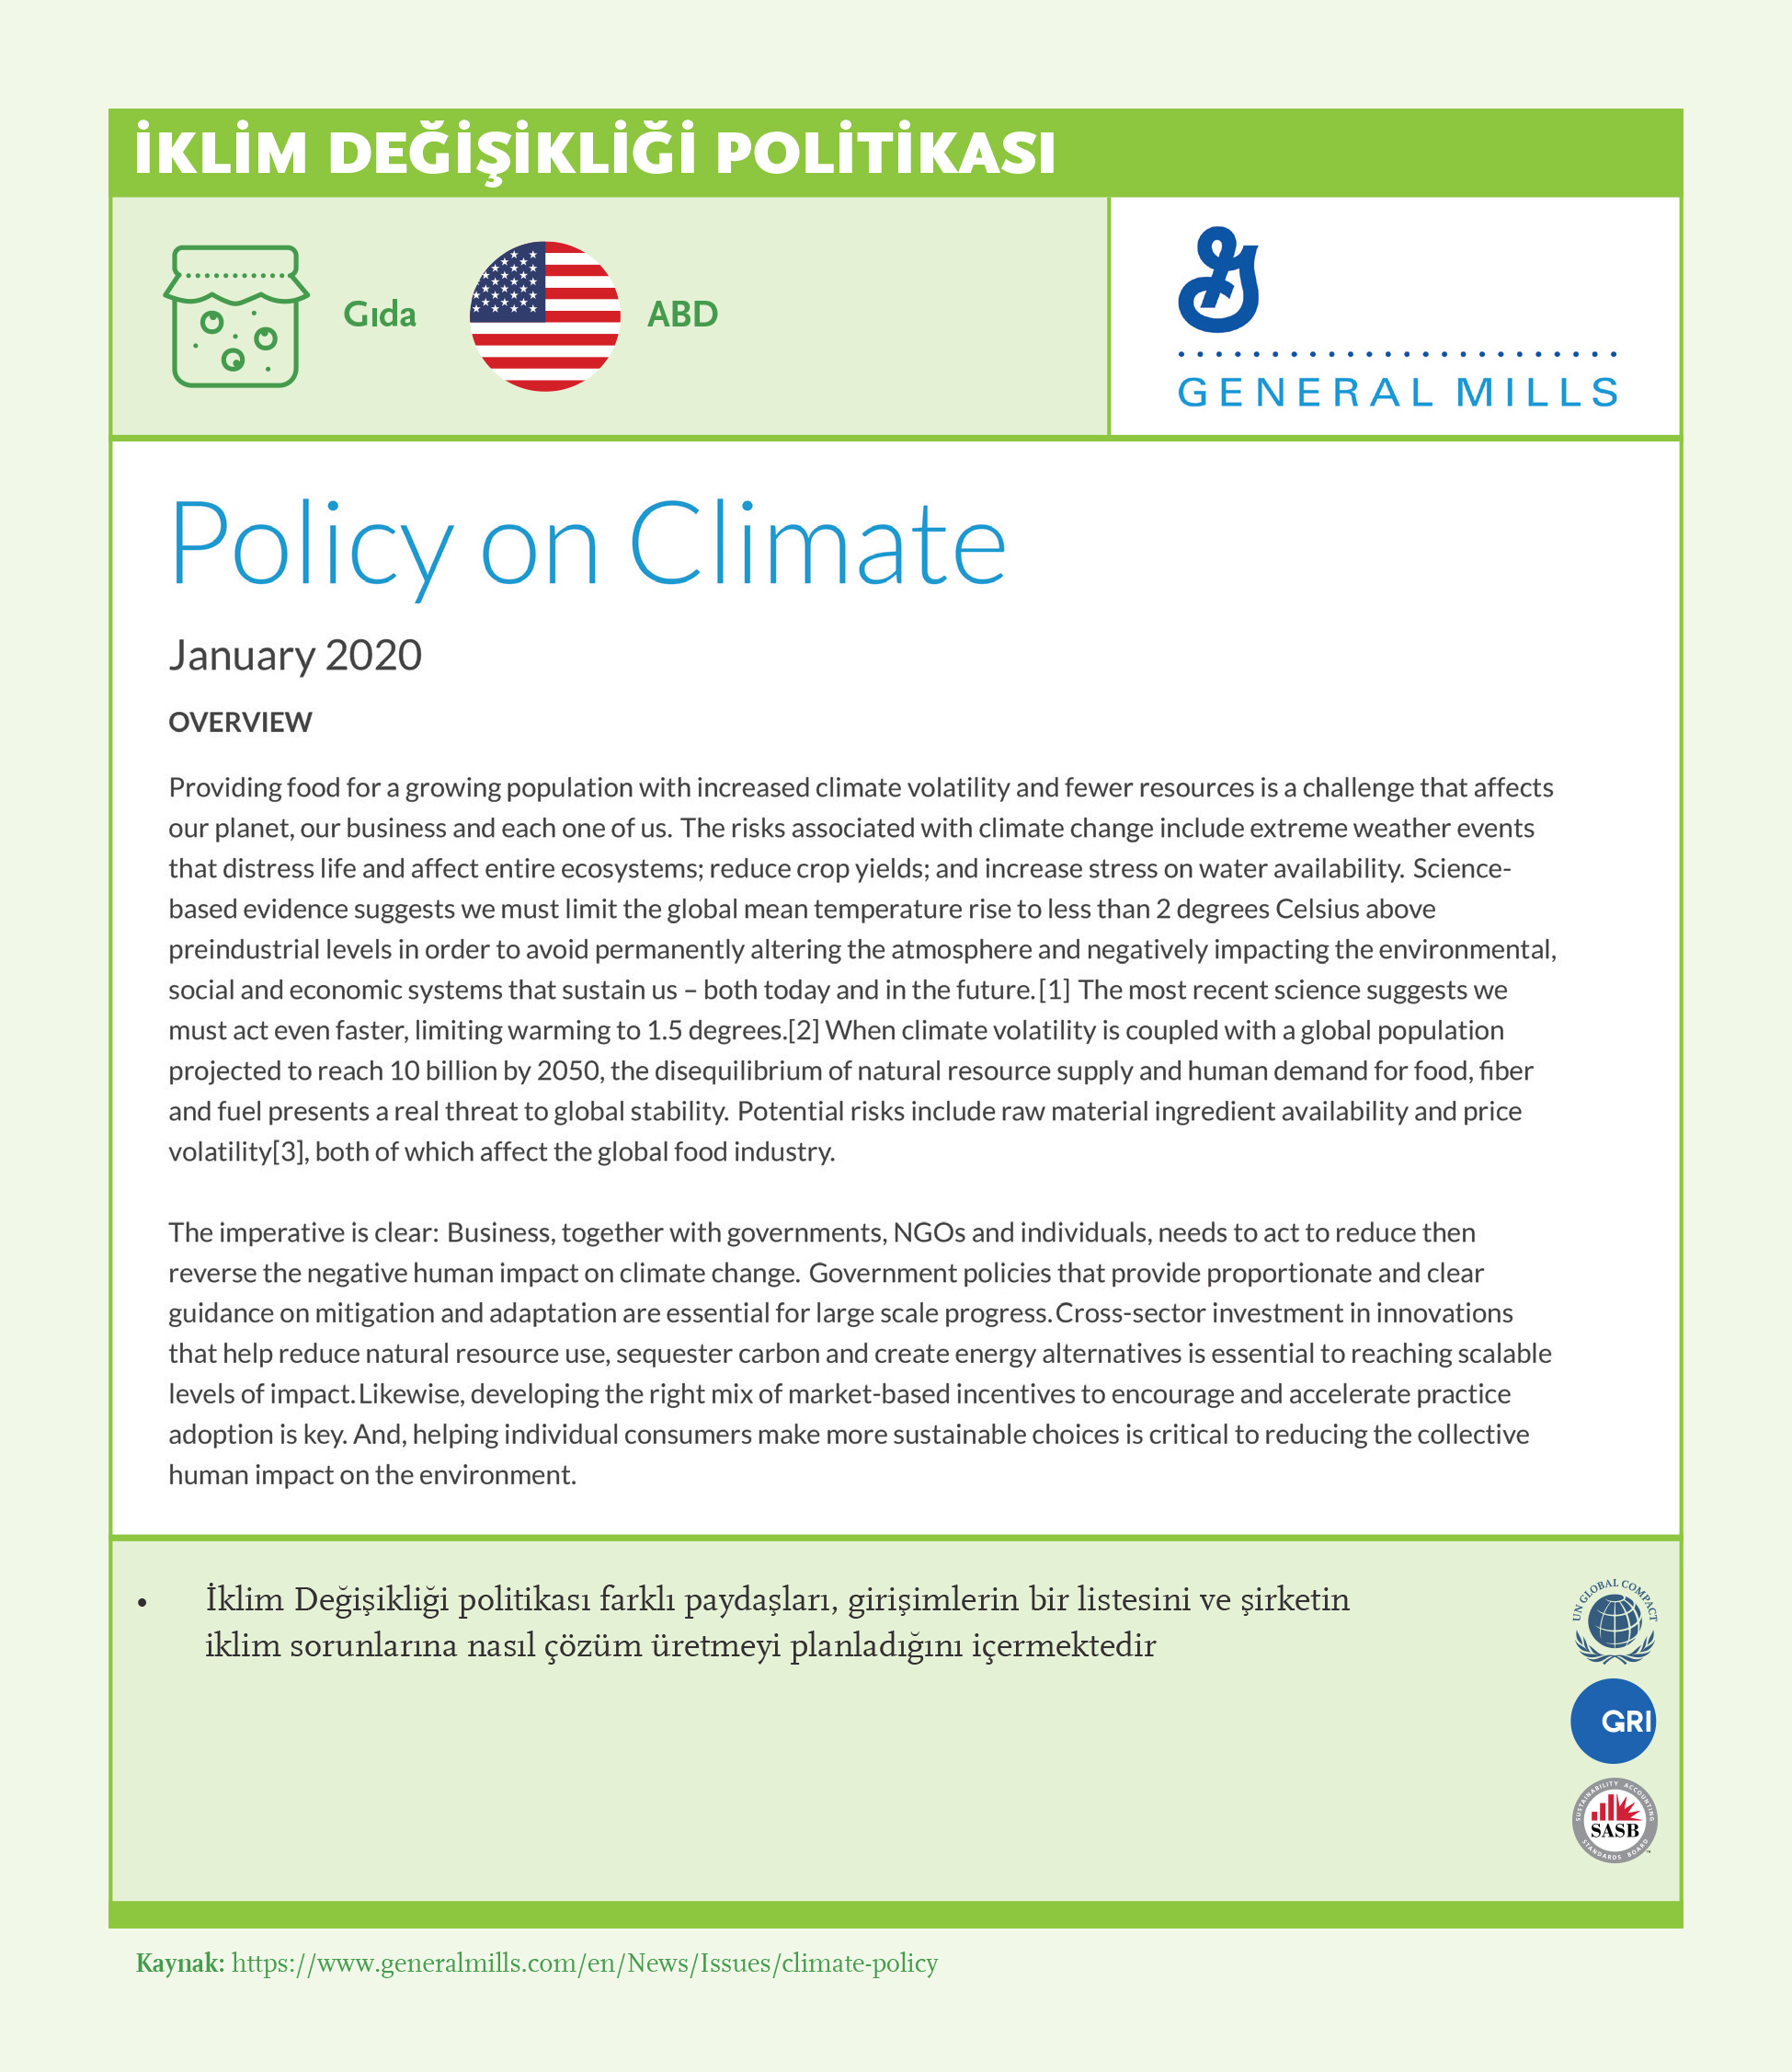 İklim Değişikliği Politikası: General Mills